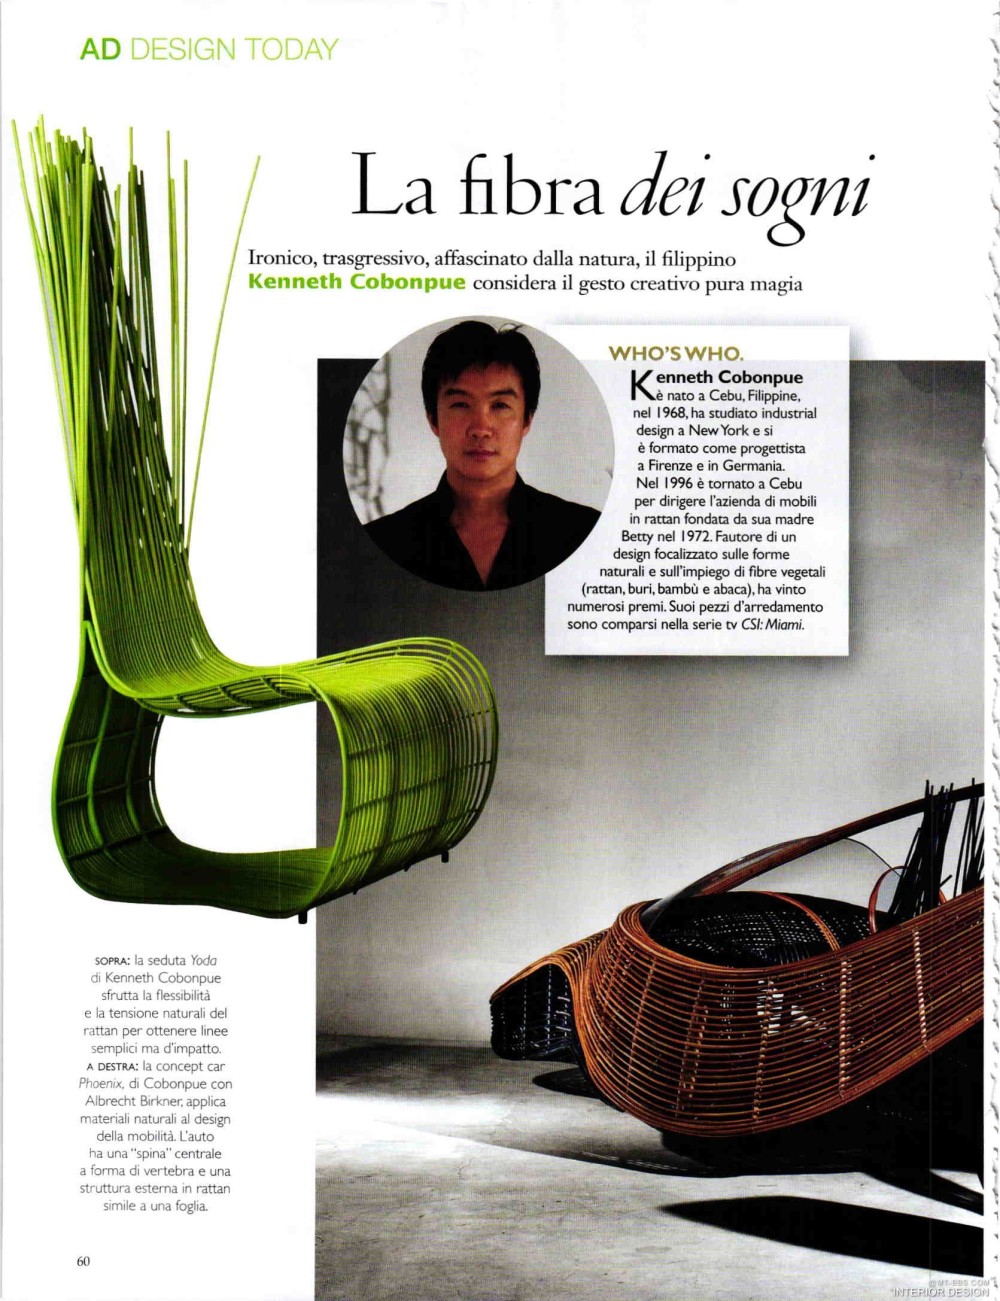 意大利AD 杂志 2012年全年JPG高清版本 全免（上传完毕）_0062.jpg